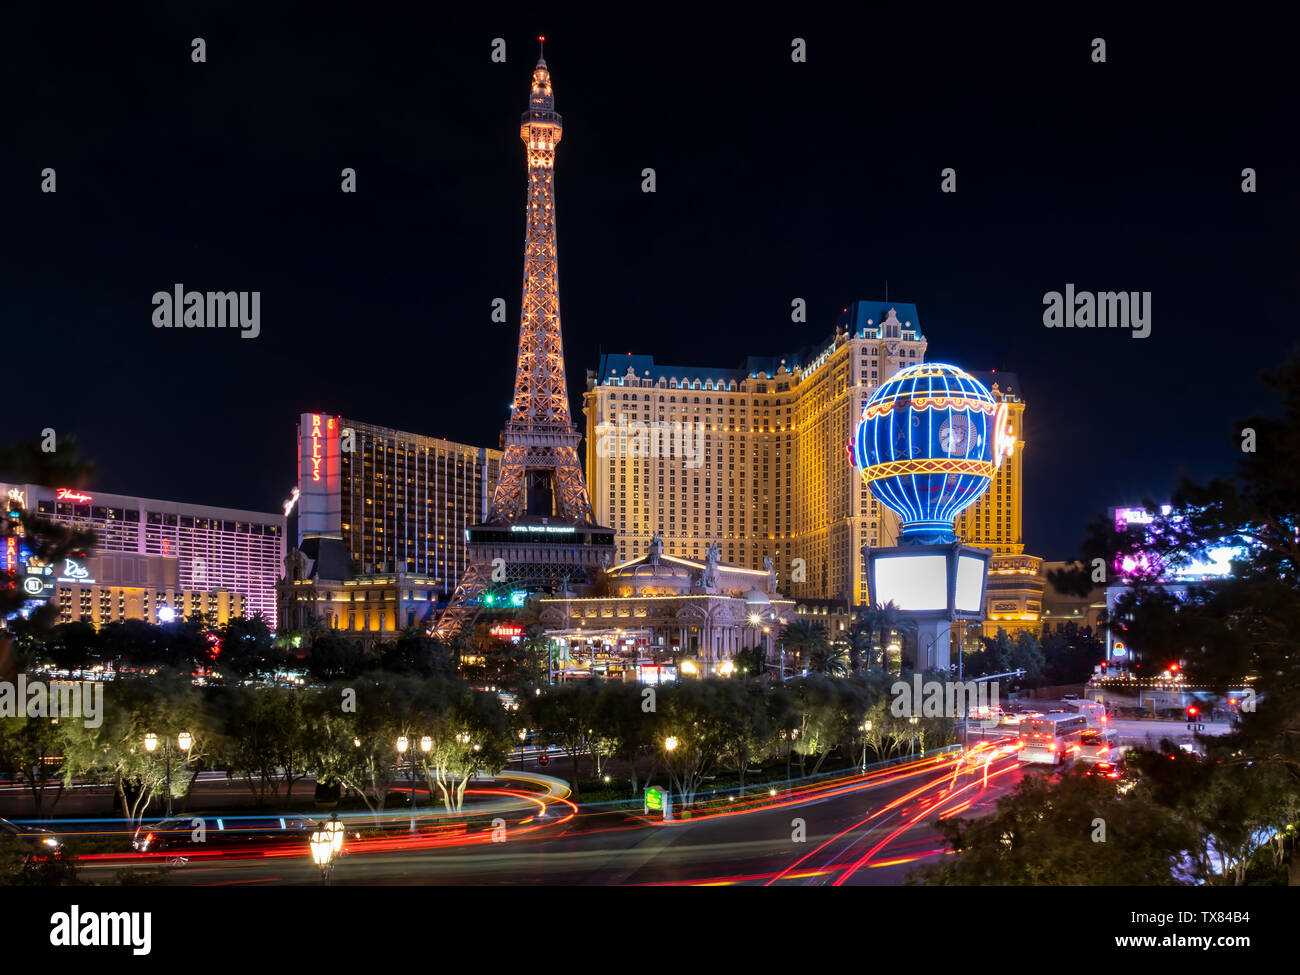 The Paris Las Vegas Hotel and Las Vegas Eiffel Tower at night, Las Vegas, Nevada, USA Stock Photo